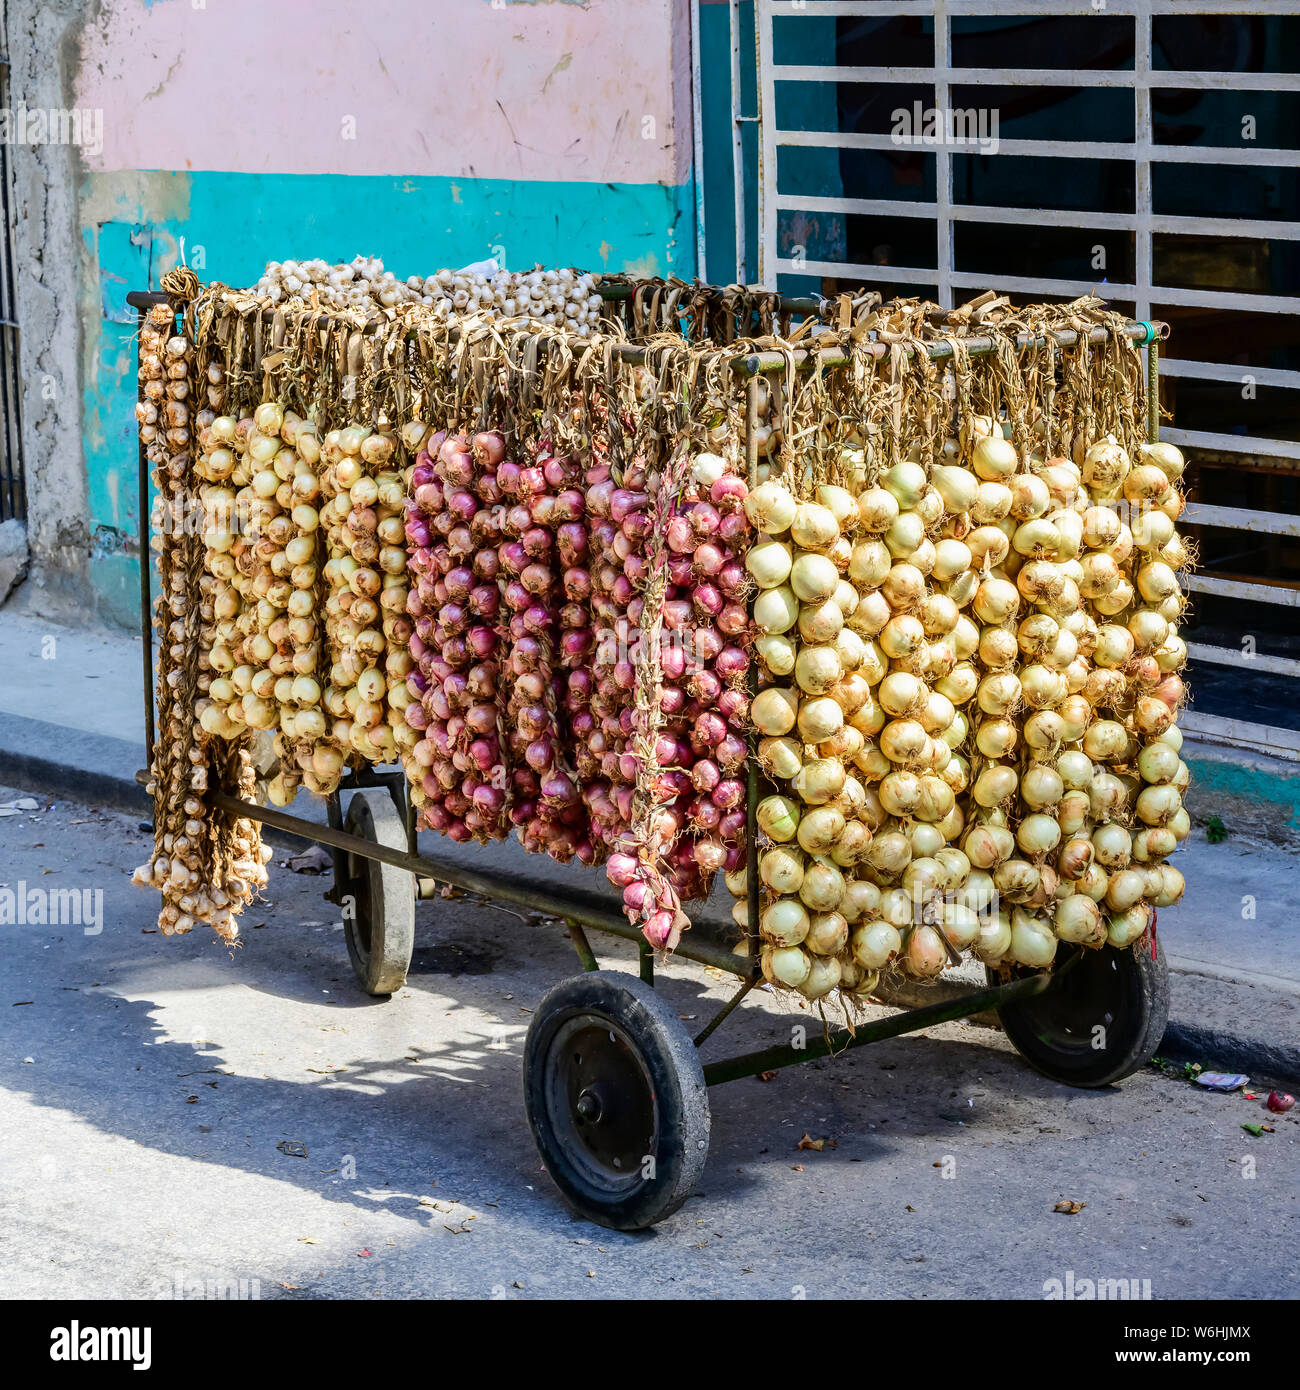 Stringhe di cipolle fresche e aglio per la vendita su un carrello in strada; l'Avana, Cuba Foto Stock